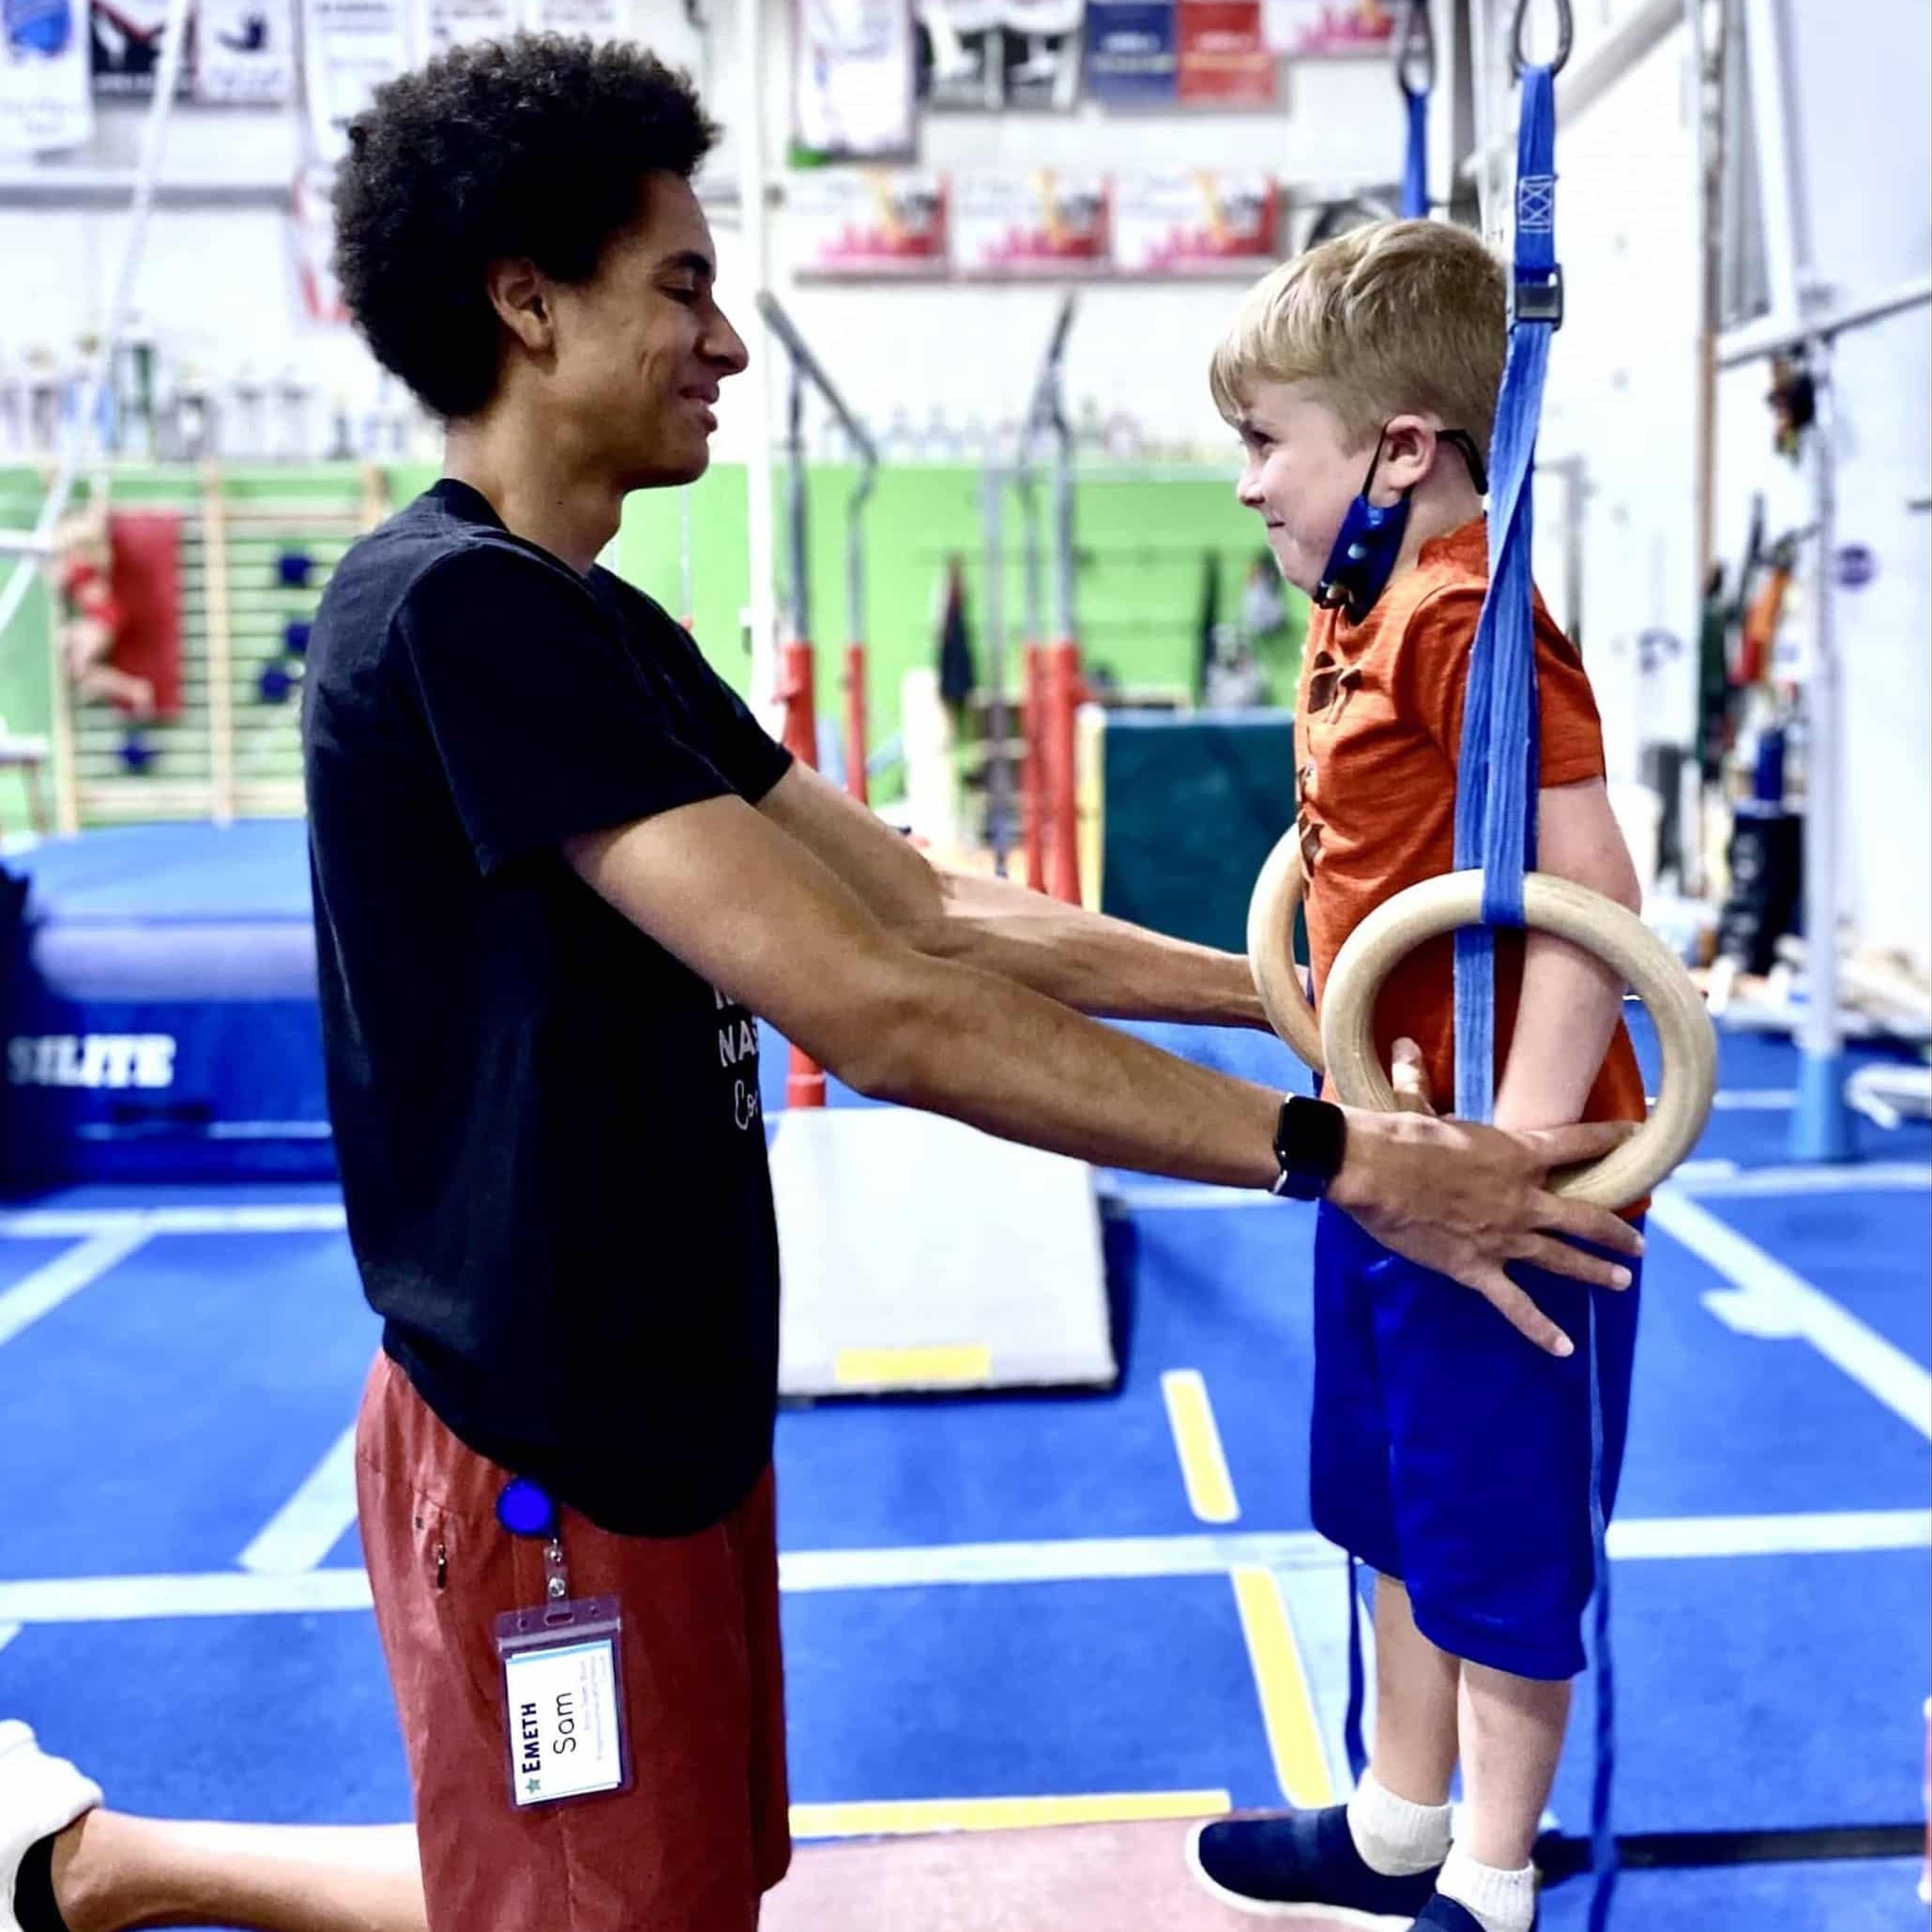 toddler / preschool gymnastics coach with boy on rings